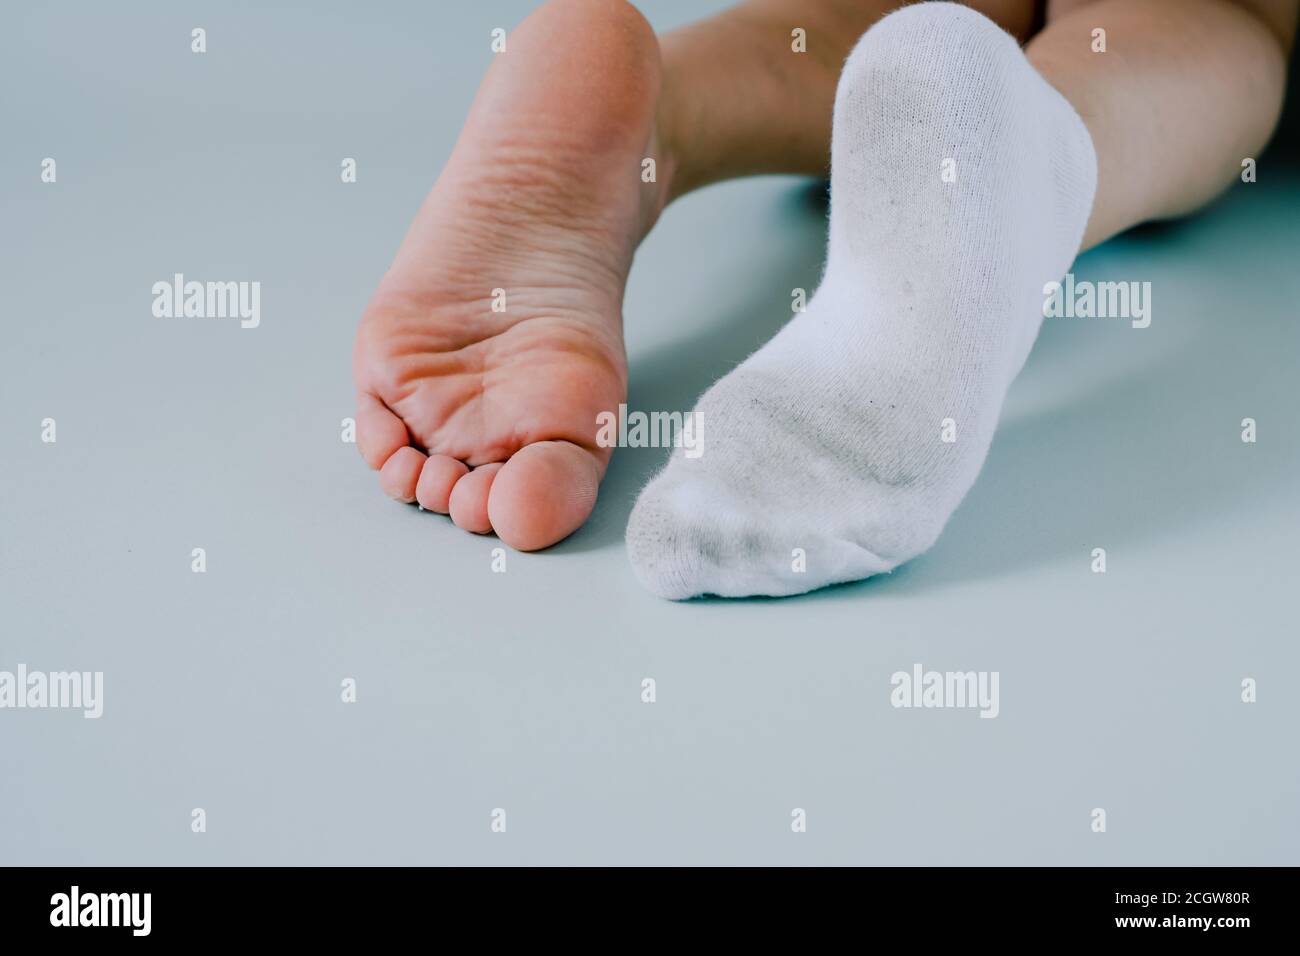 Rechter Fuß in schmutziger Socke, linker Fuß ohne Socken.isoliert auf  grauem Hintergrund Stockfotografie - Alamy